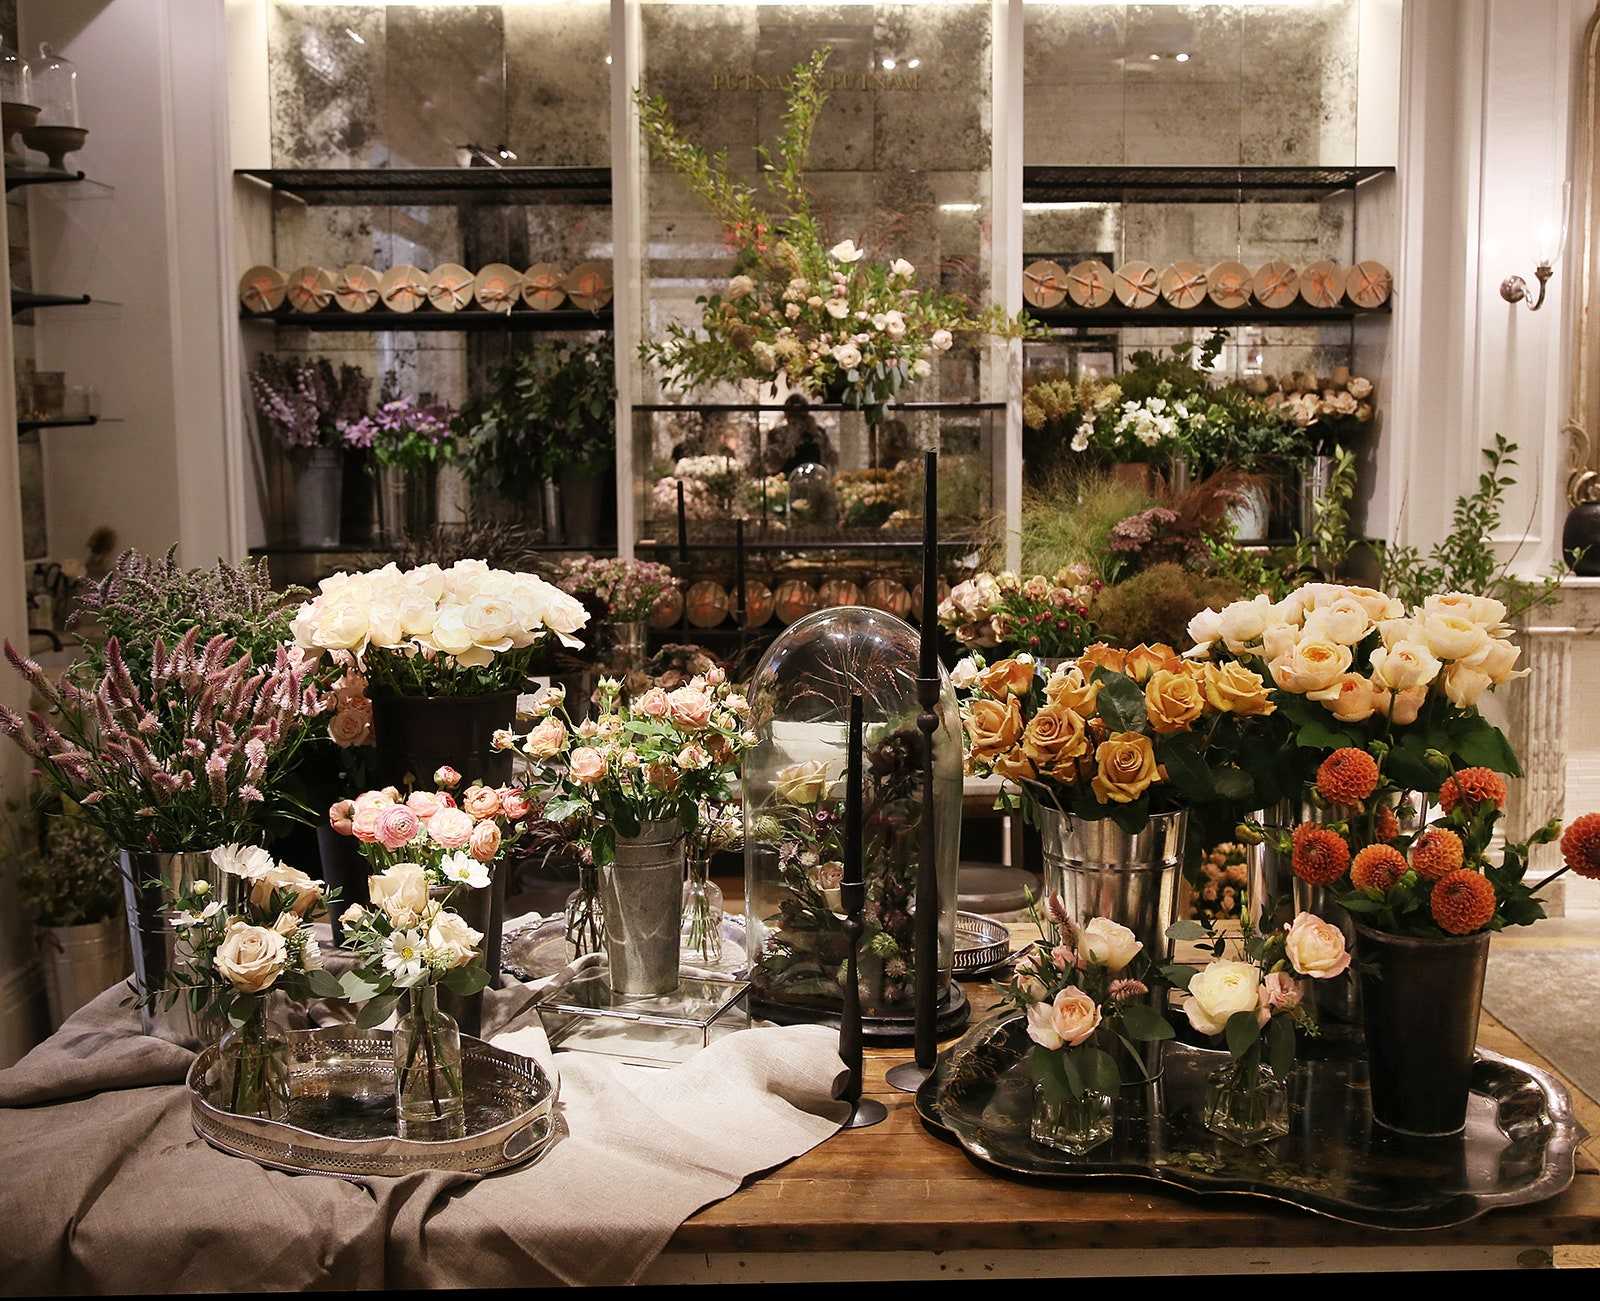 Как открыть цветочный магазин с нуля: бизнес-план, расходы, доходы